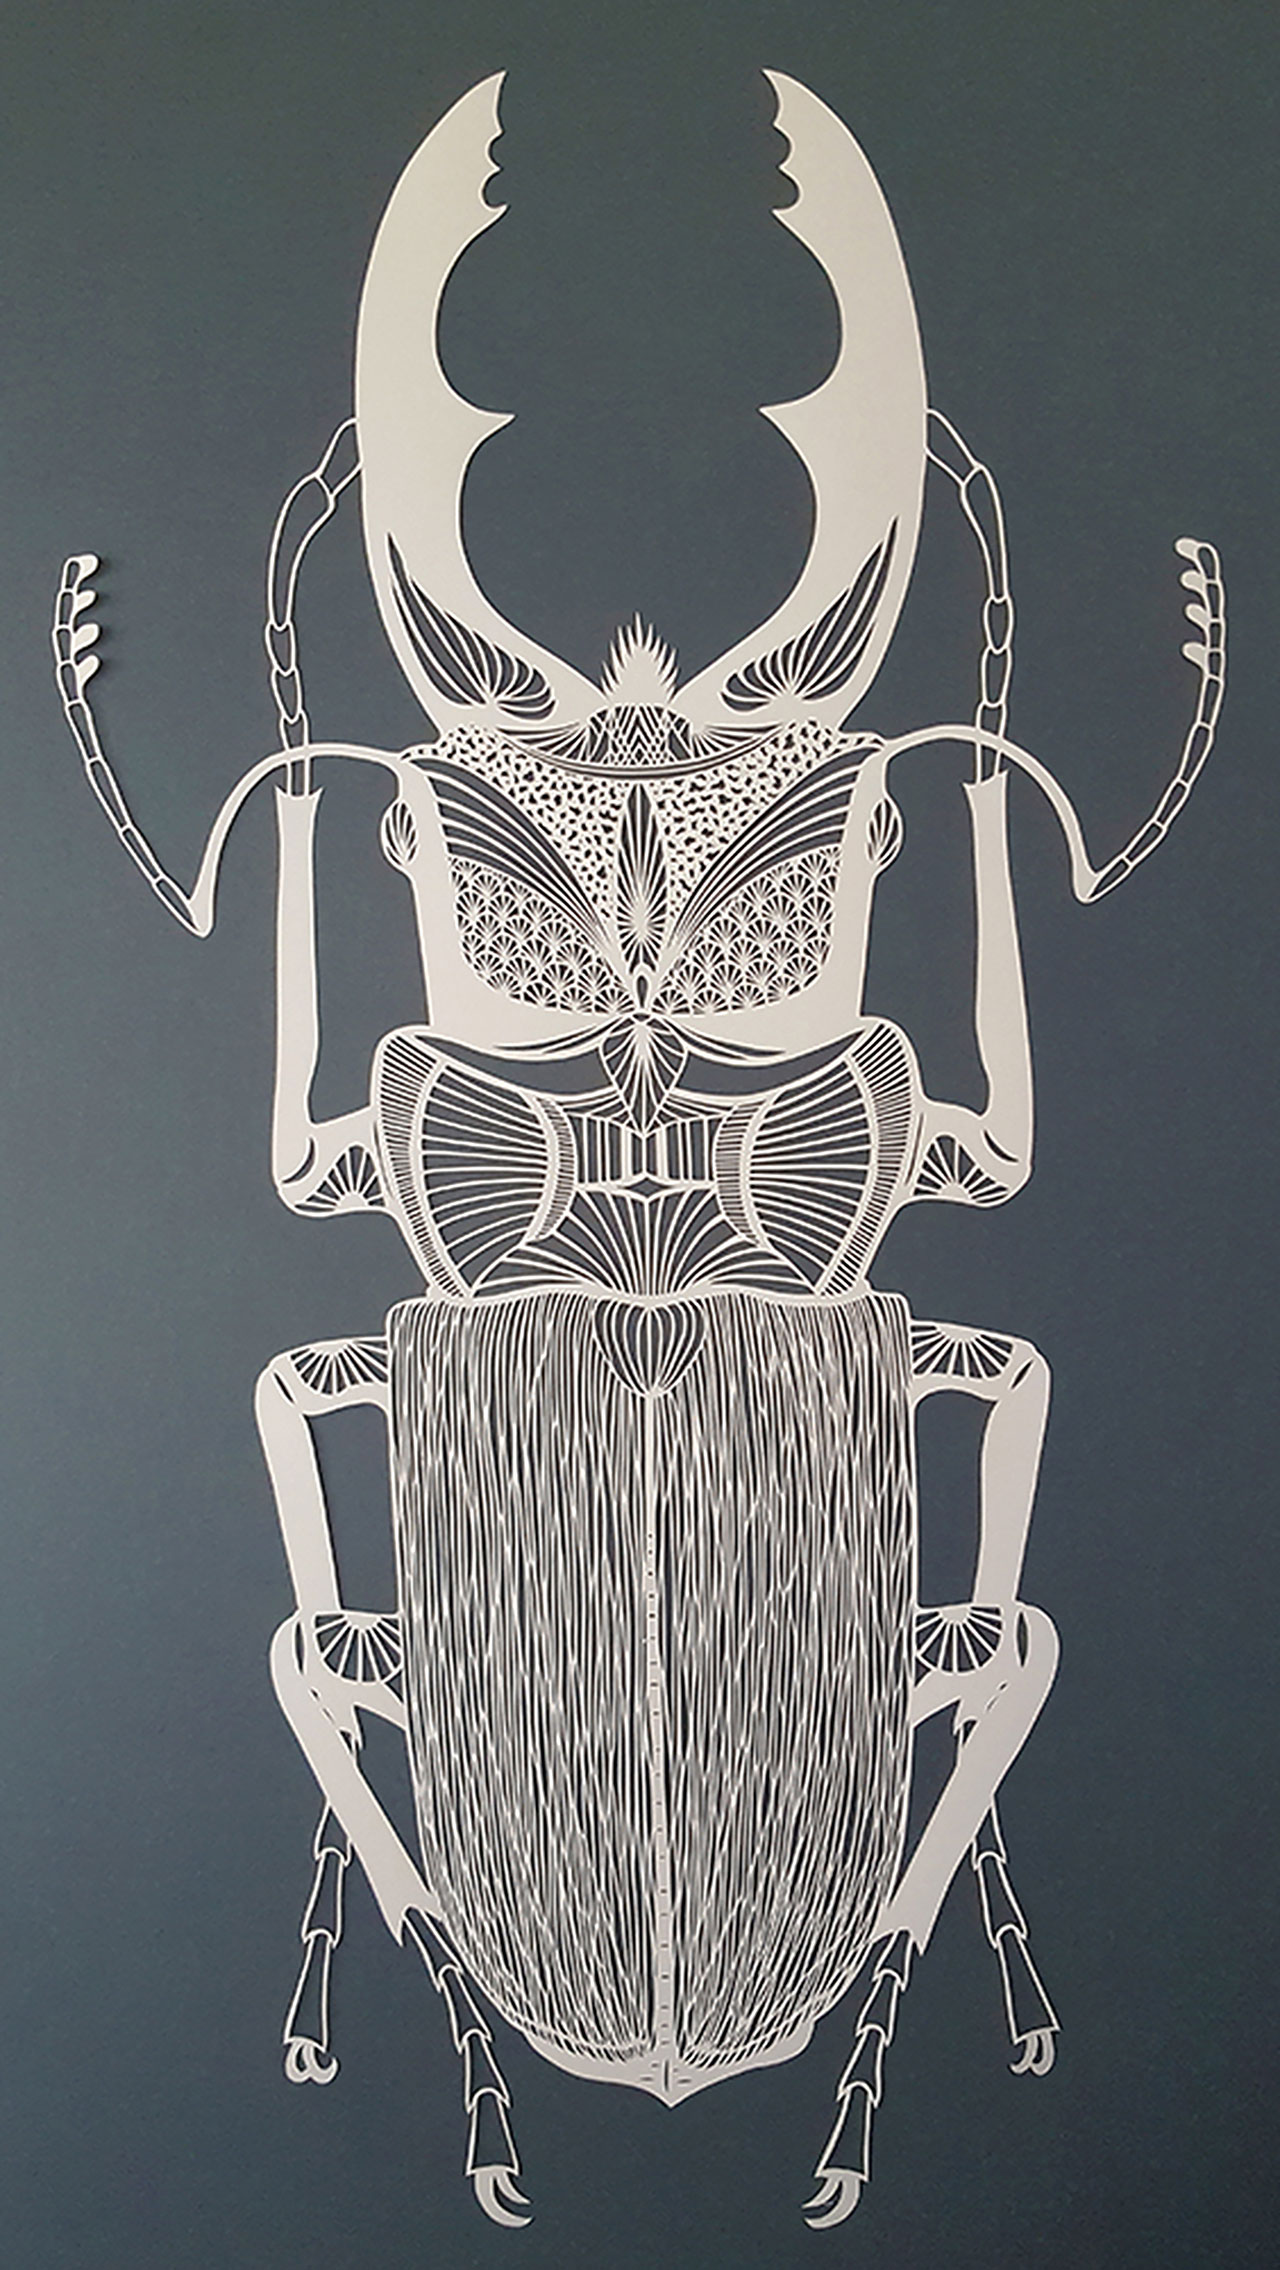 Pippa Dyrlaga, Stag beetle, 2016 © Pippa Dyrlaga.